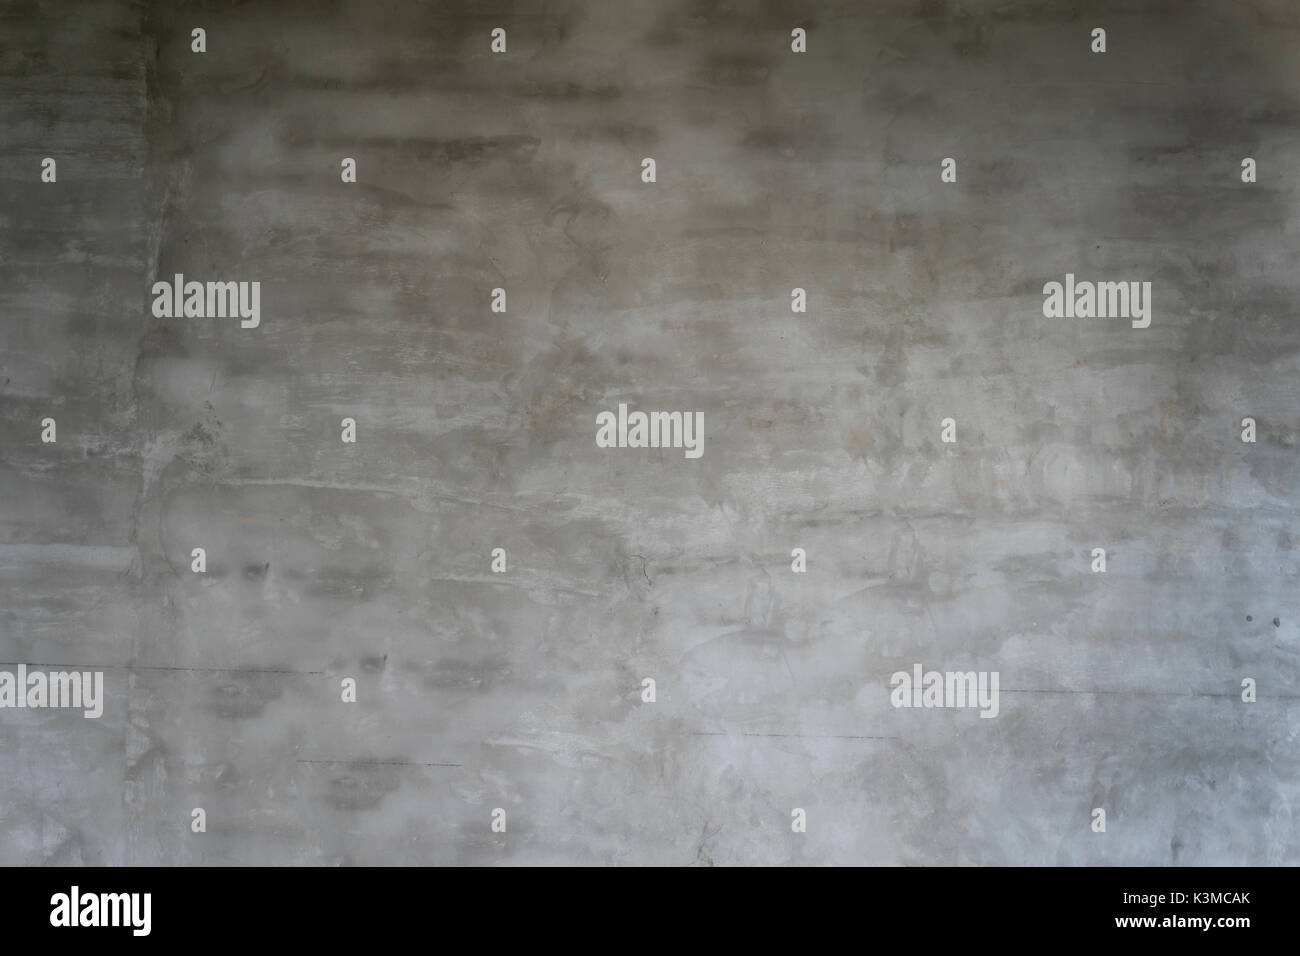 Sfondo grigio da parete in cemento. close-up dell'immagine. Foto Stock